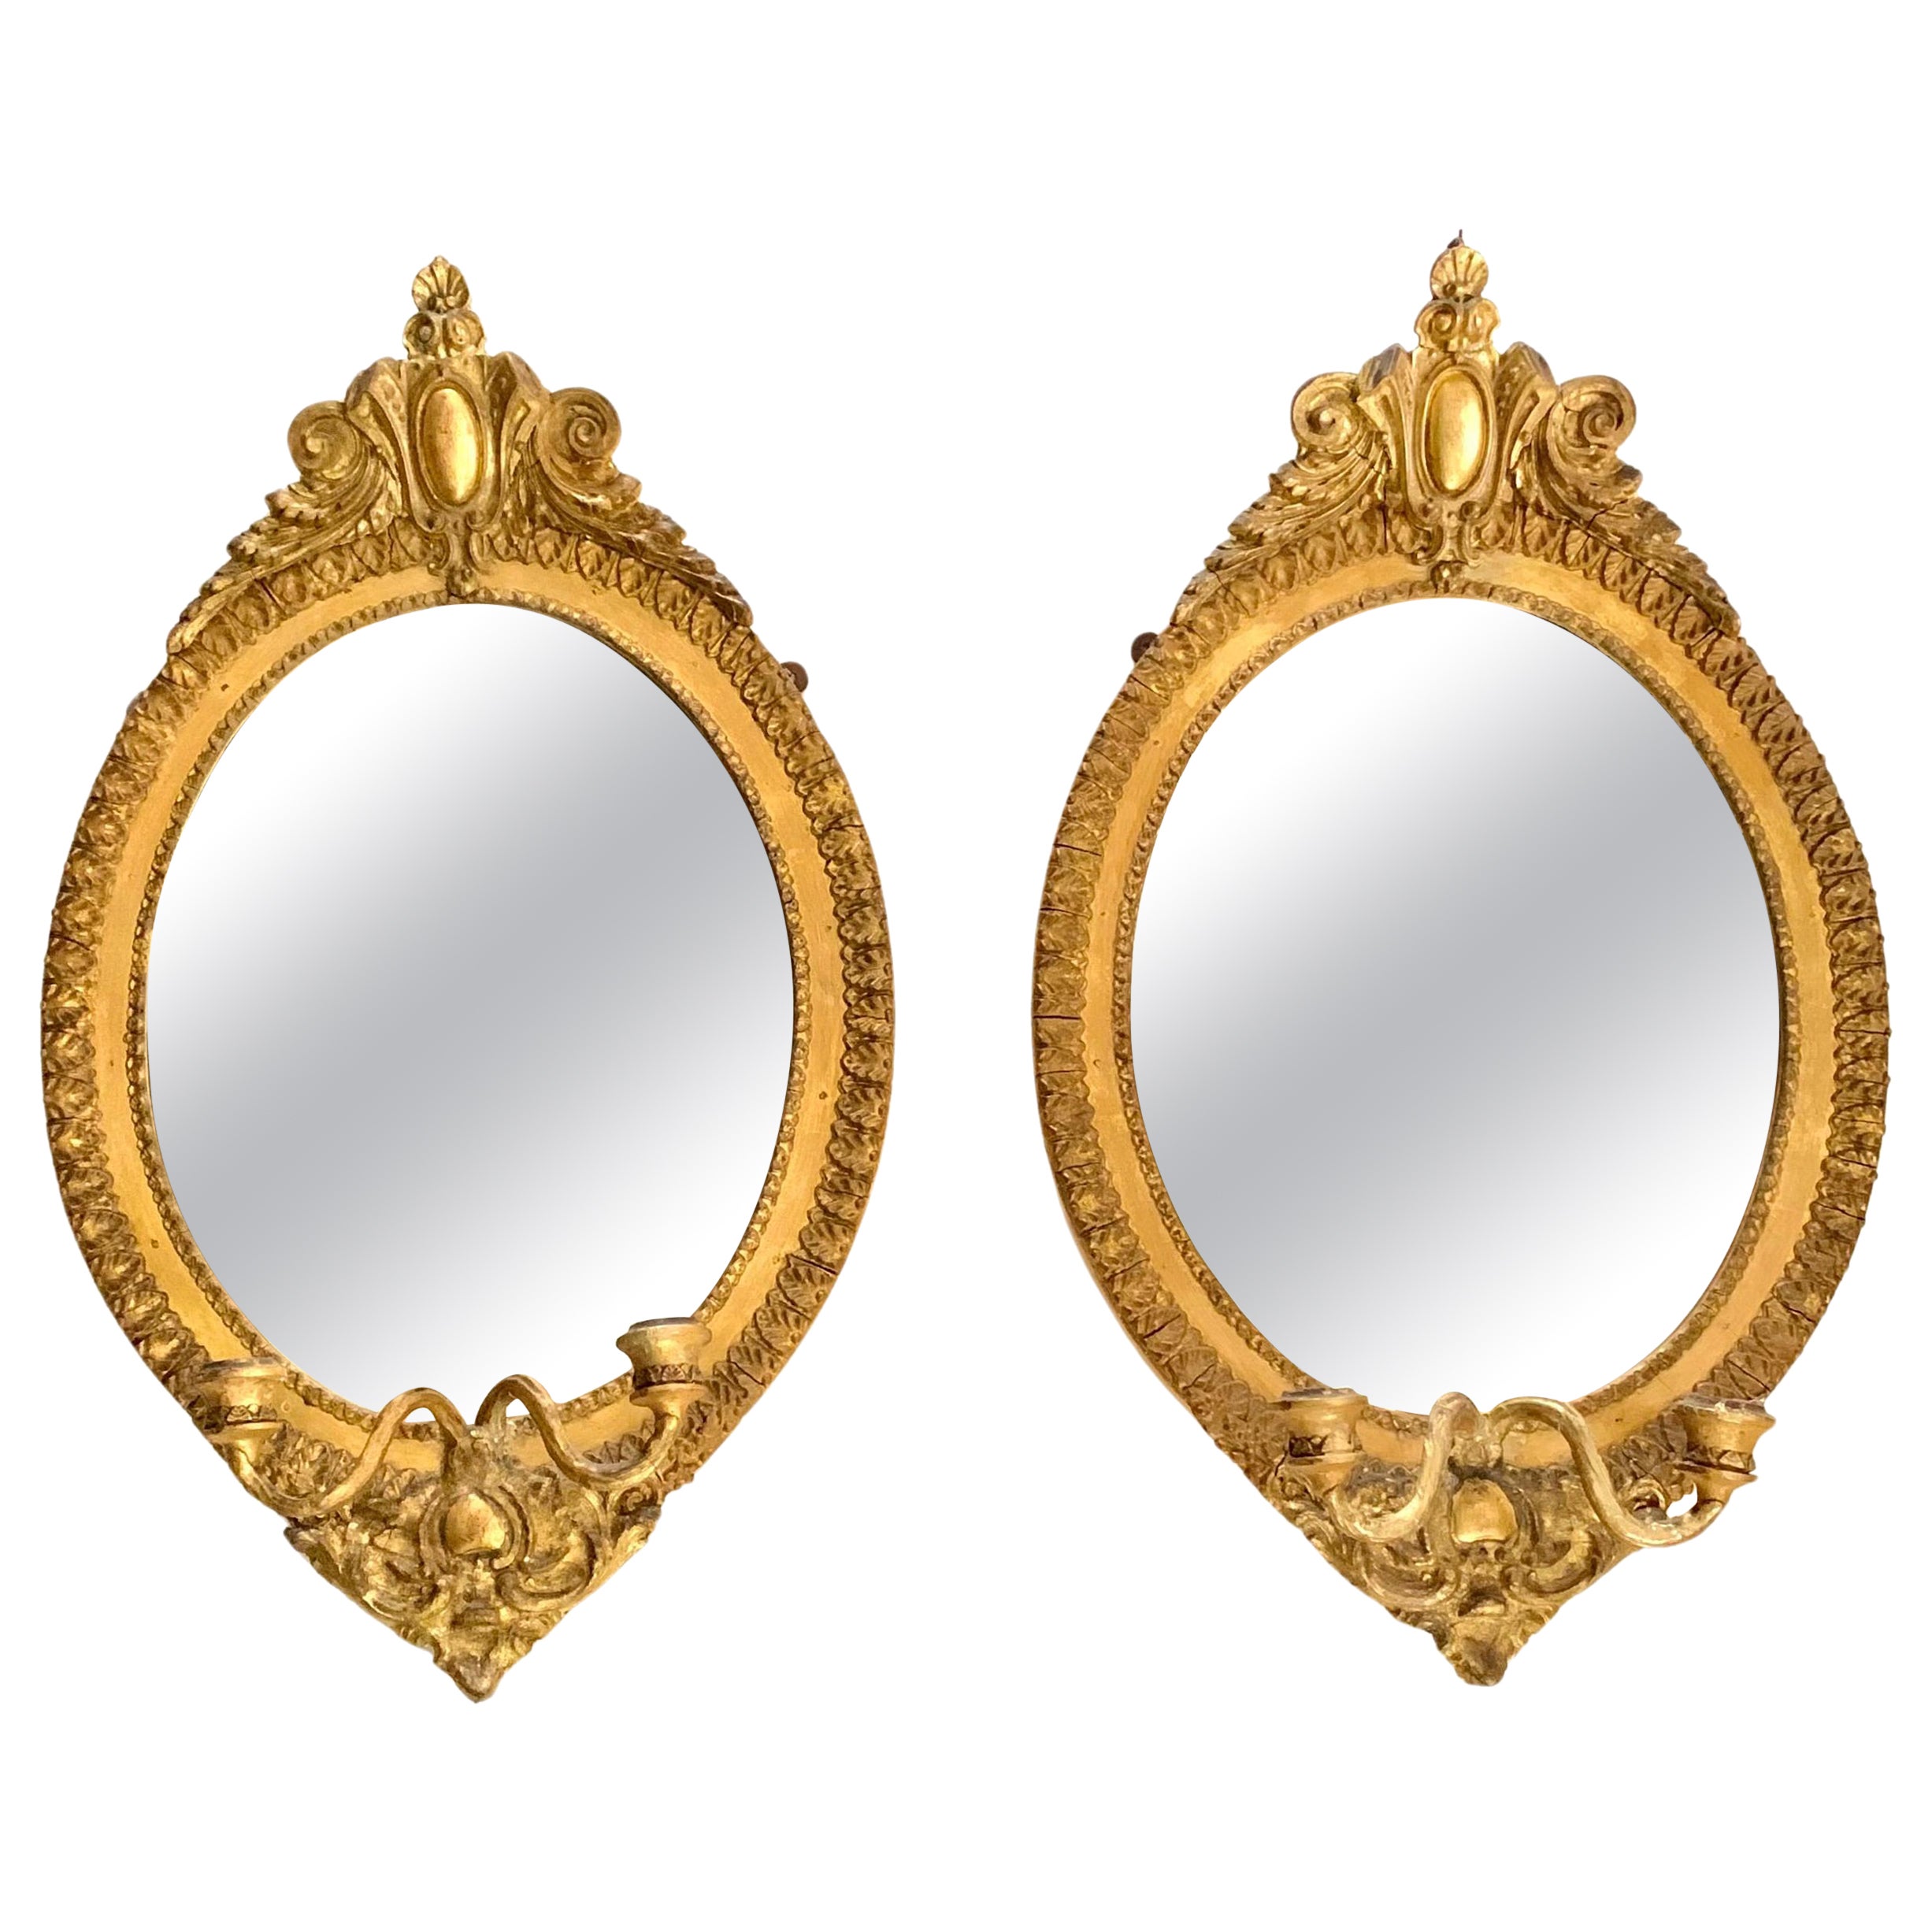 Paire de miroirs girandoles ovales en bois doré de style néoclassique du 19e siècle